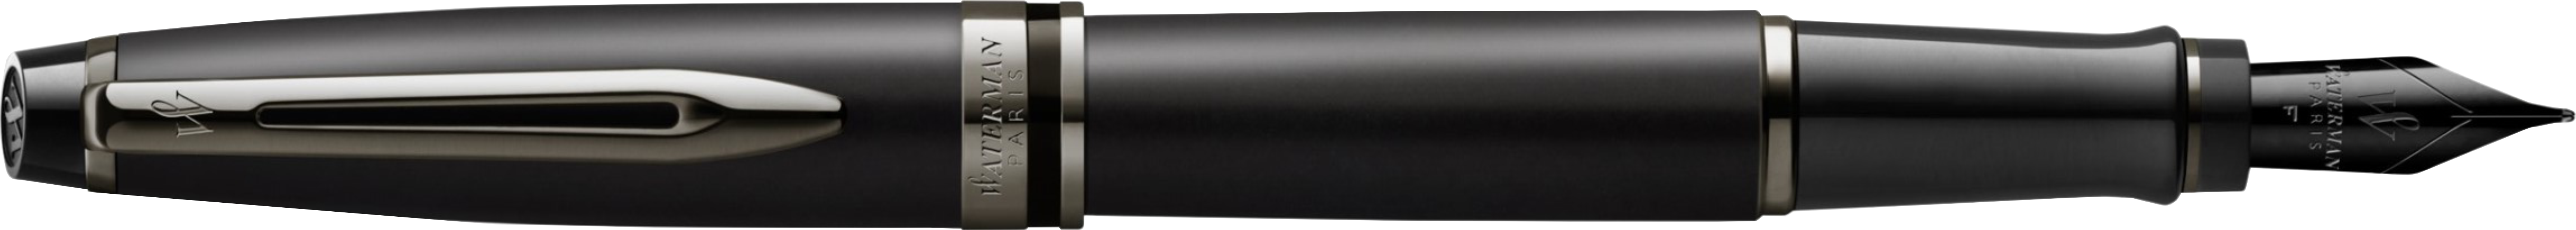 2119188, 2119189 Waterman Expert Перьевая ручка   Black F BLK в подарочной упаковке